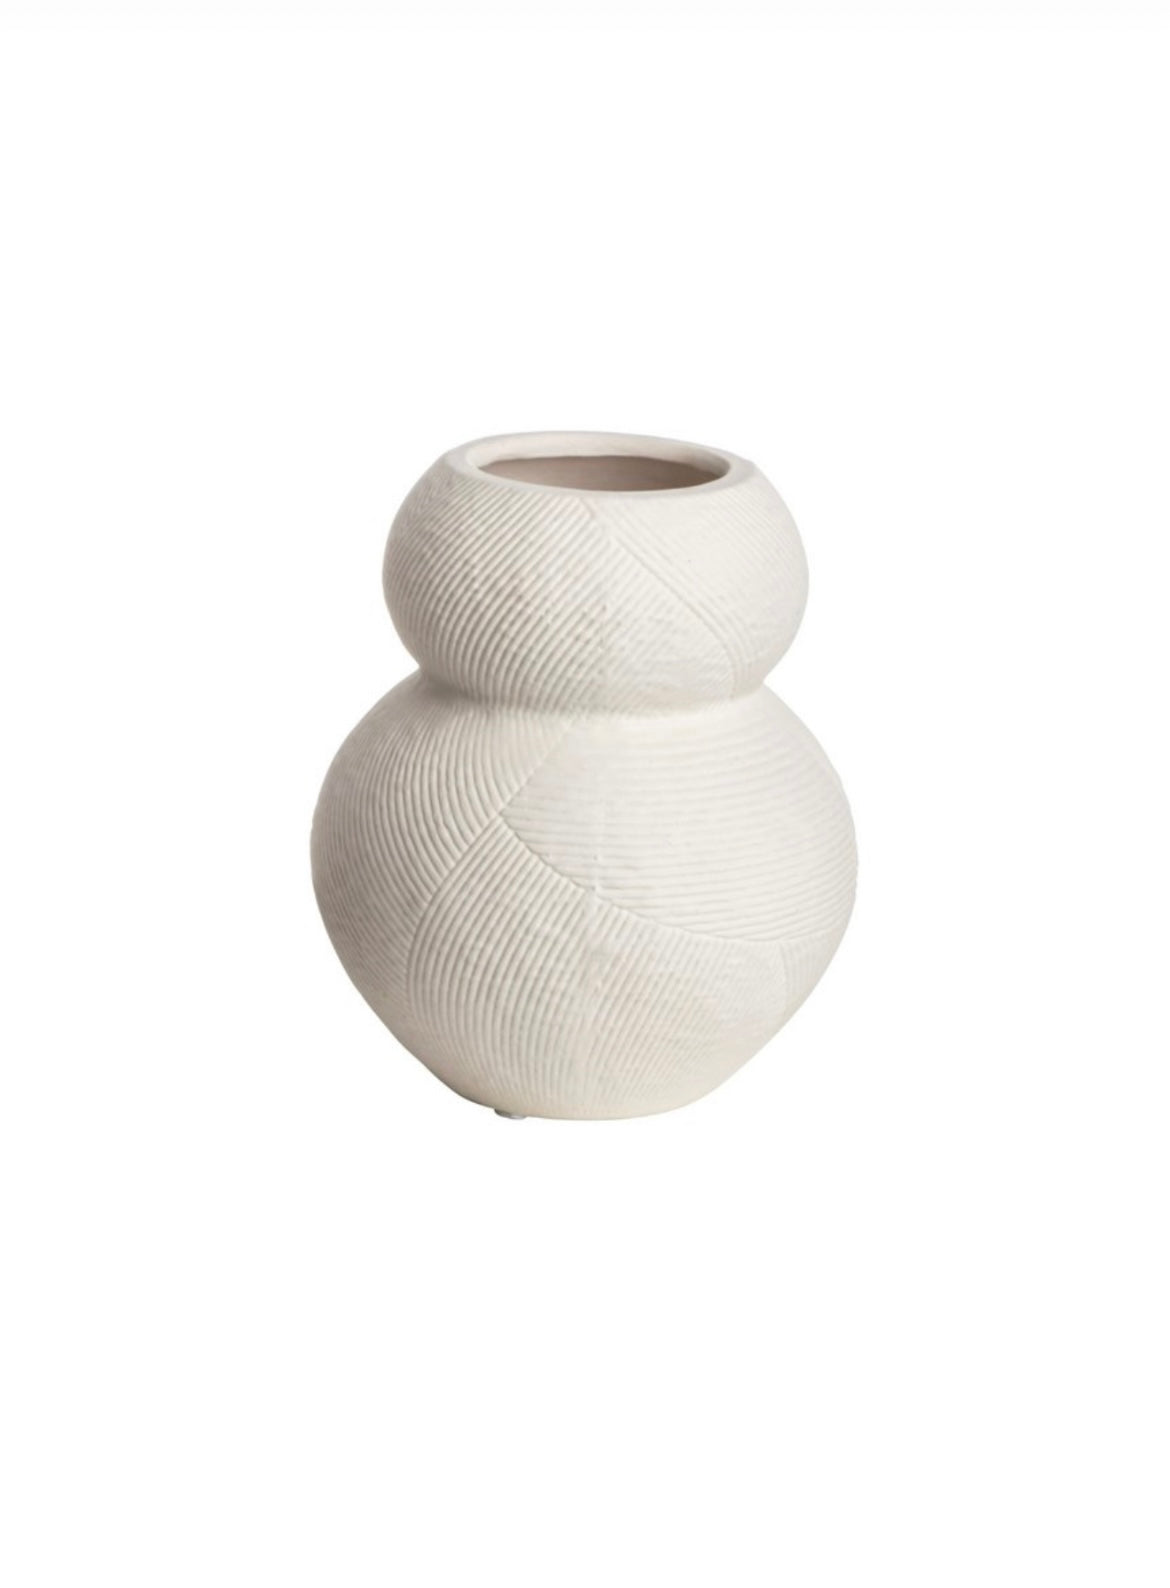 Weiße Vase aus strukturieren Porzellan im Boho Design. Zum dekorieren von Trockenblumen  